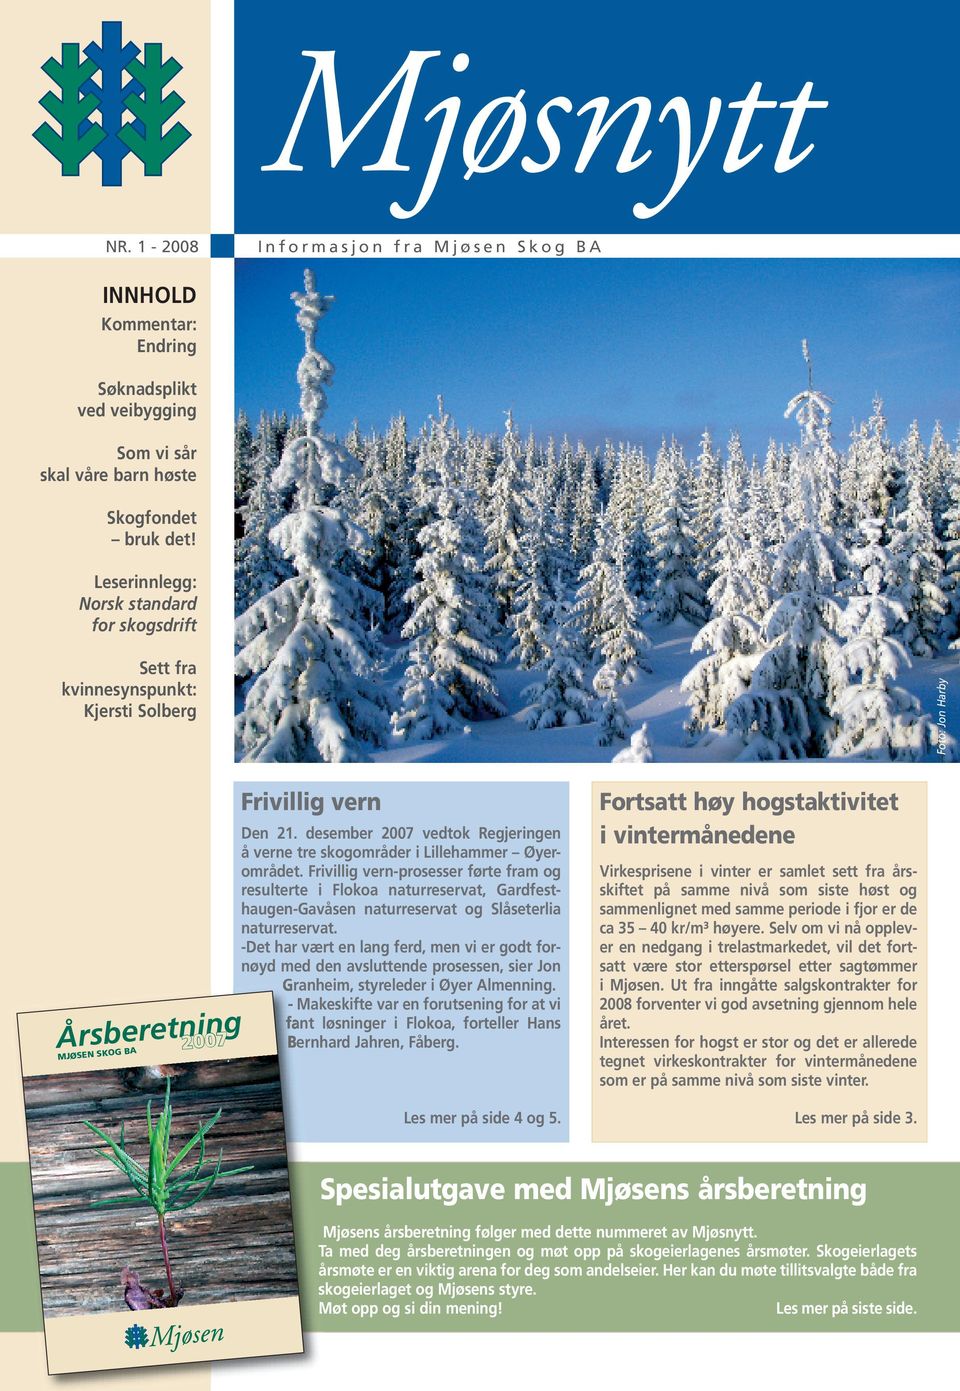 desember 2007 vedtok Regjeringen å verne tre skogområder i Lillehammer Øyerområdet.